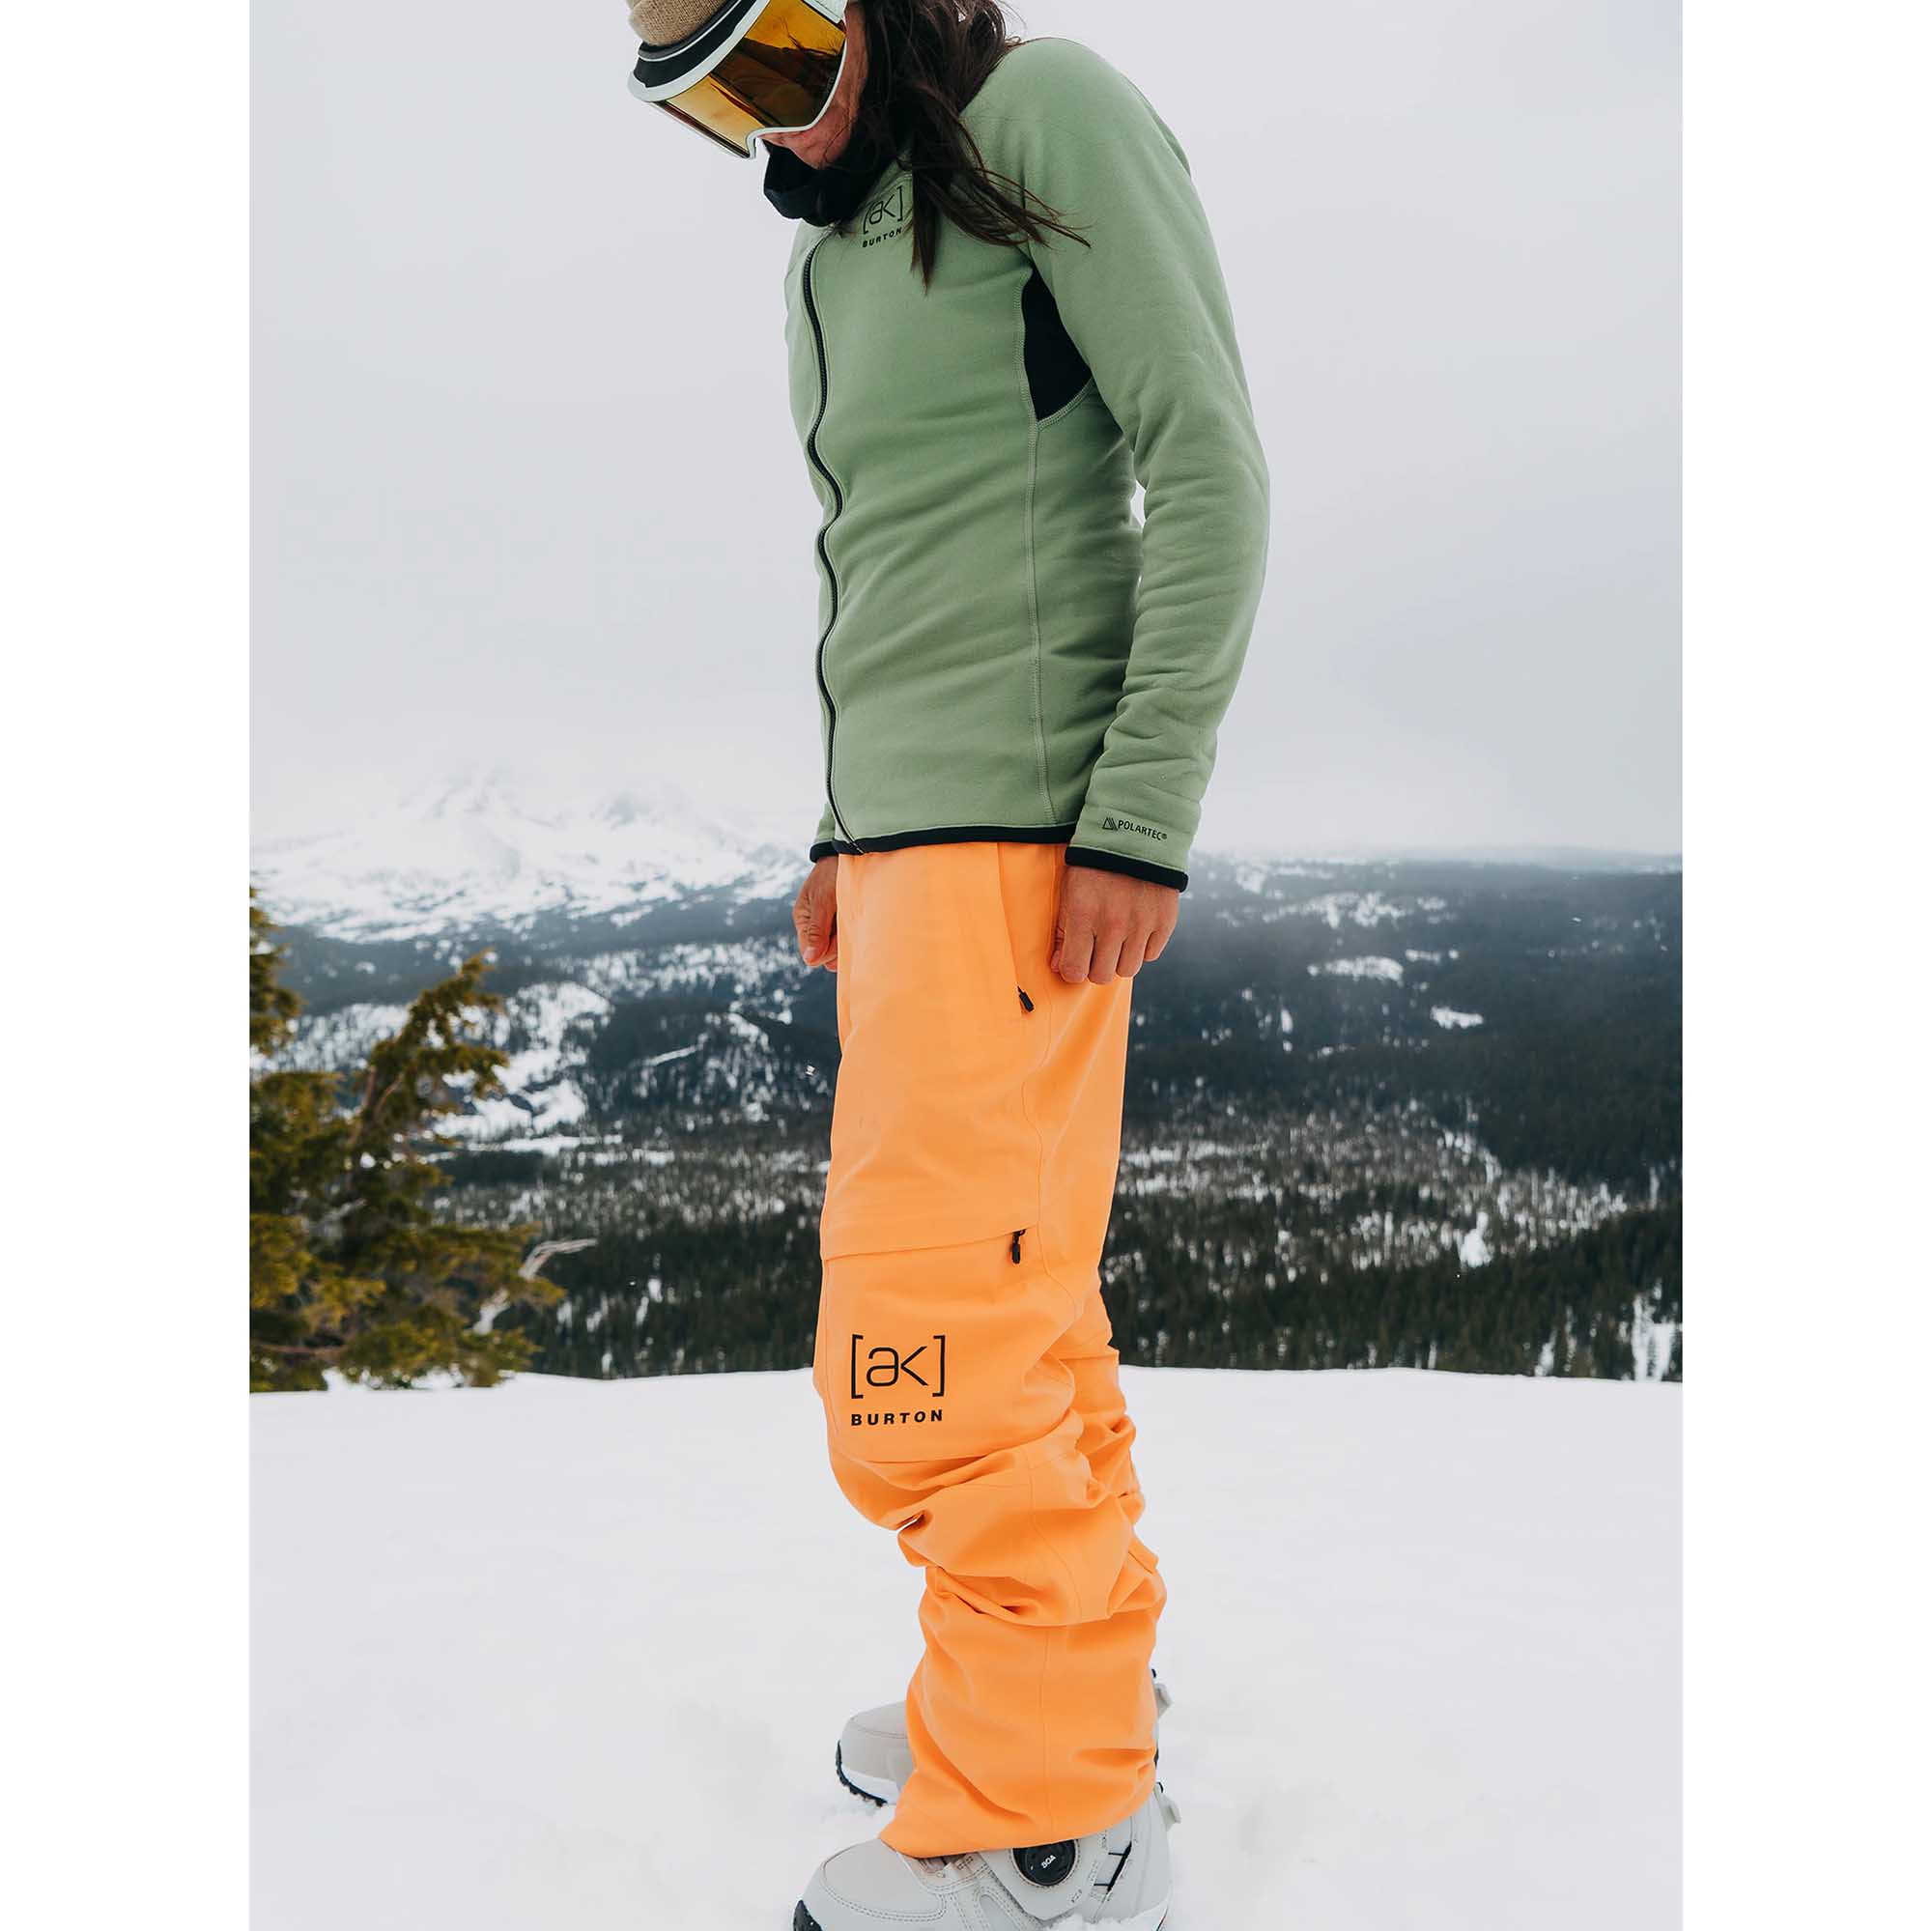 Burton [ak] GTX Summit 2L Women's Ski/Snowboard Pants